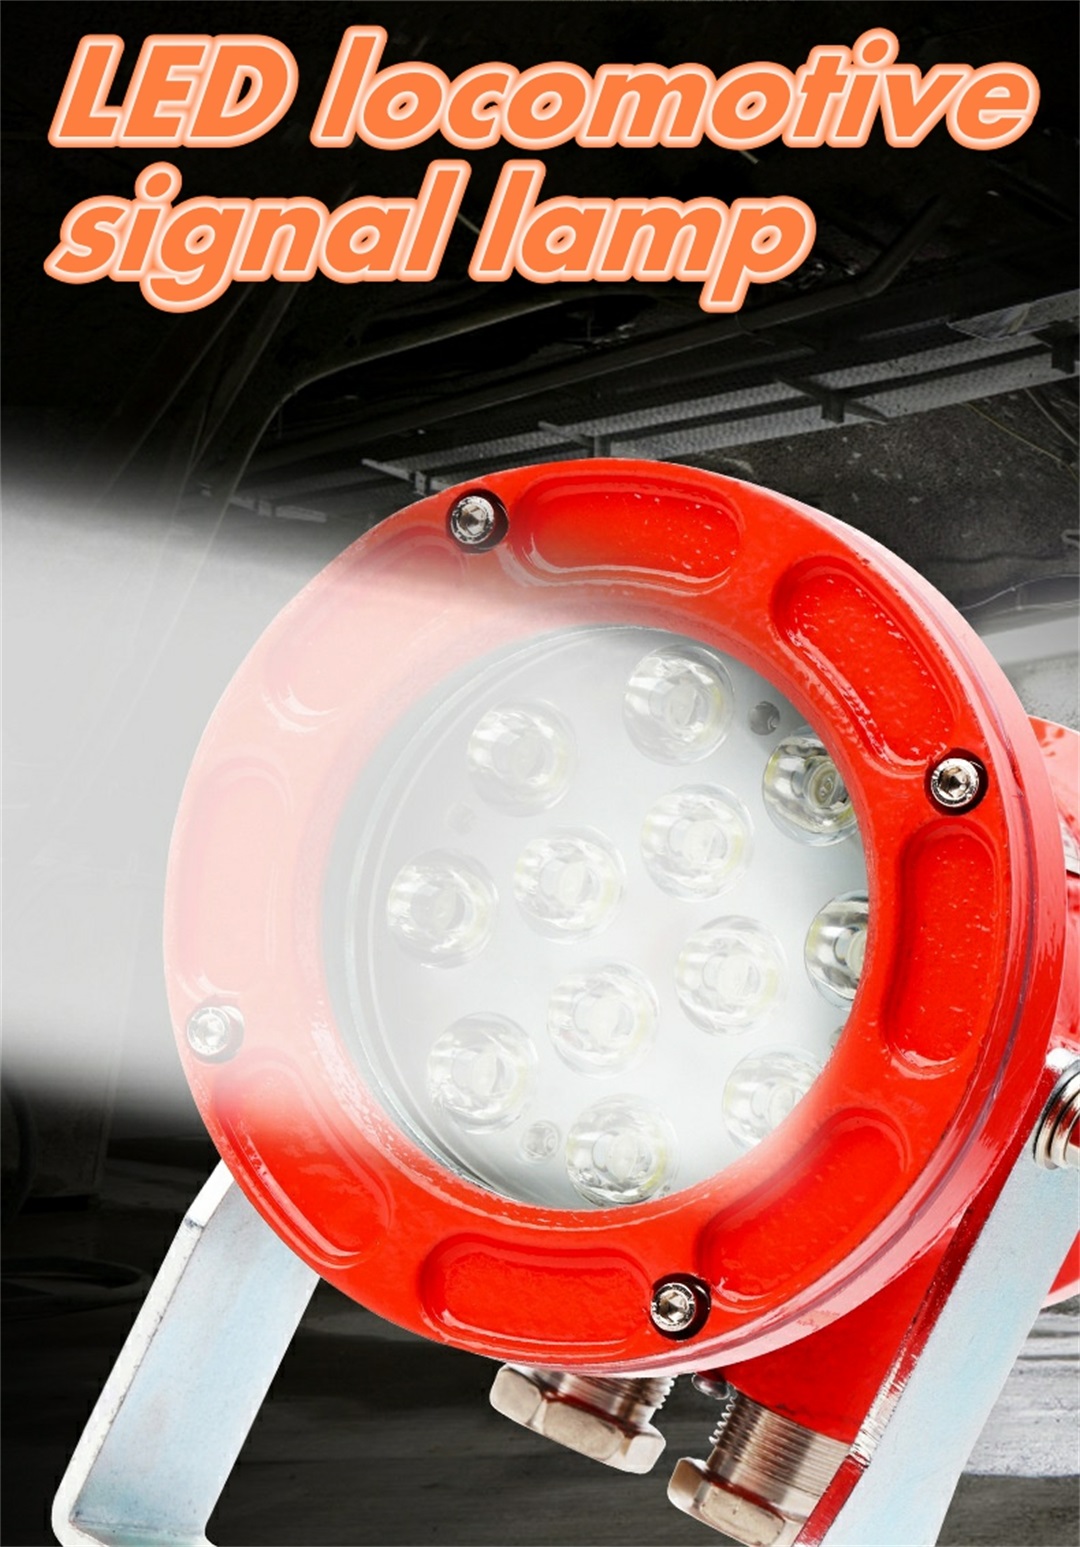 የእኔ ፍንዳታ-ተከላካይ LED locomotive lamp